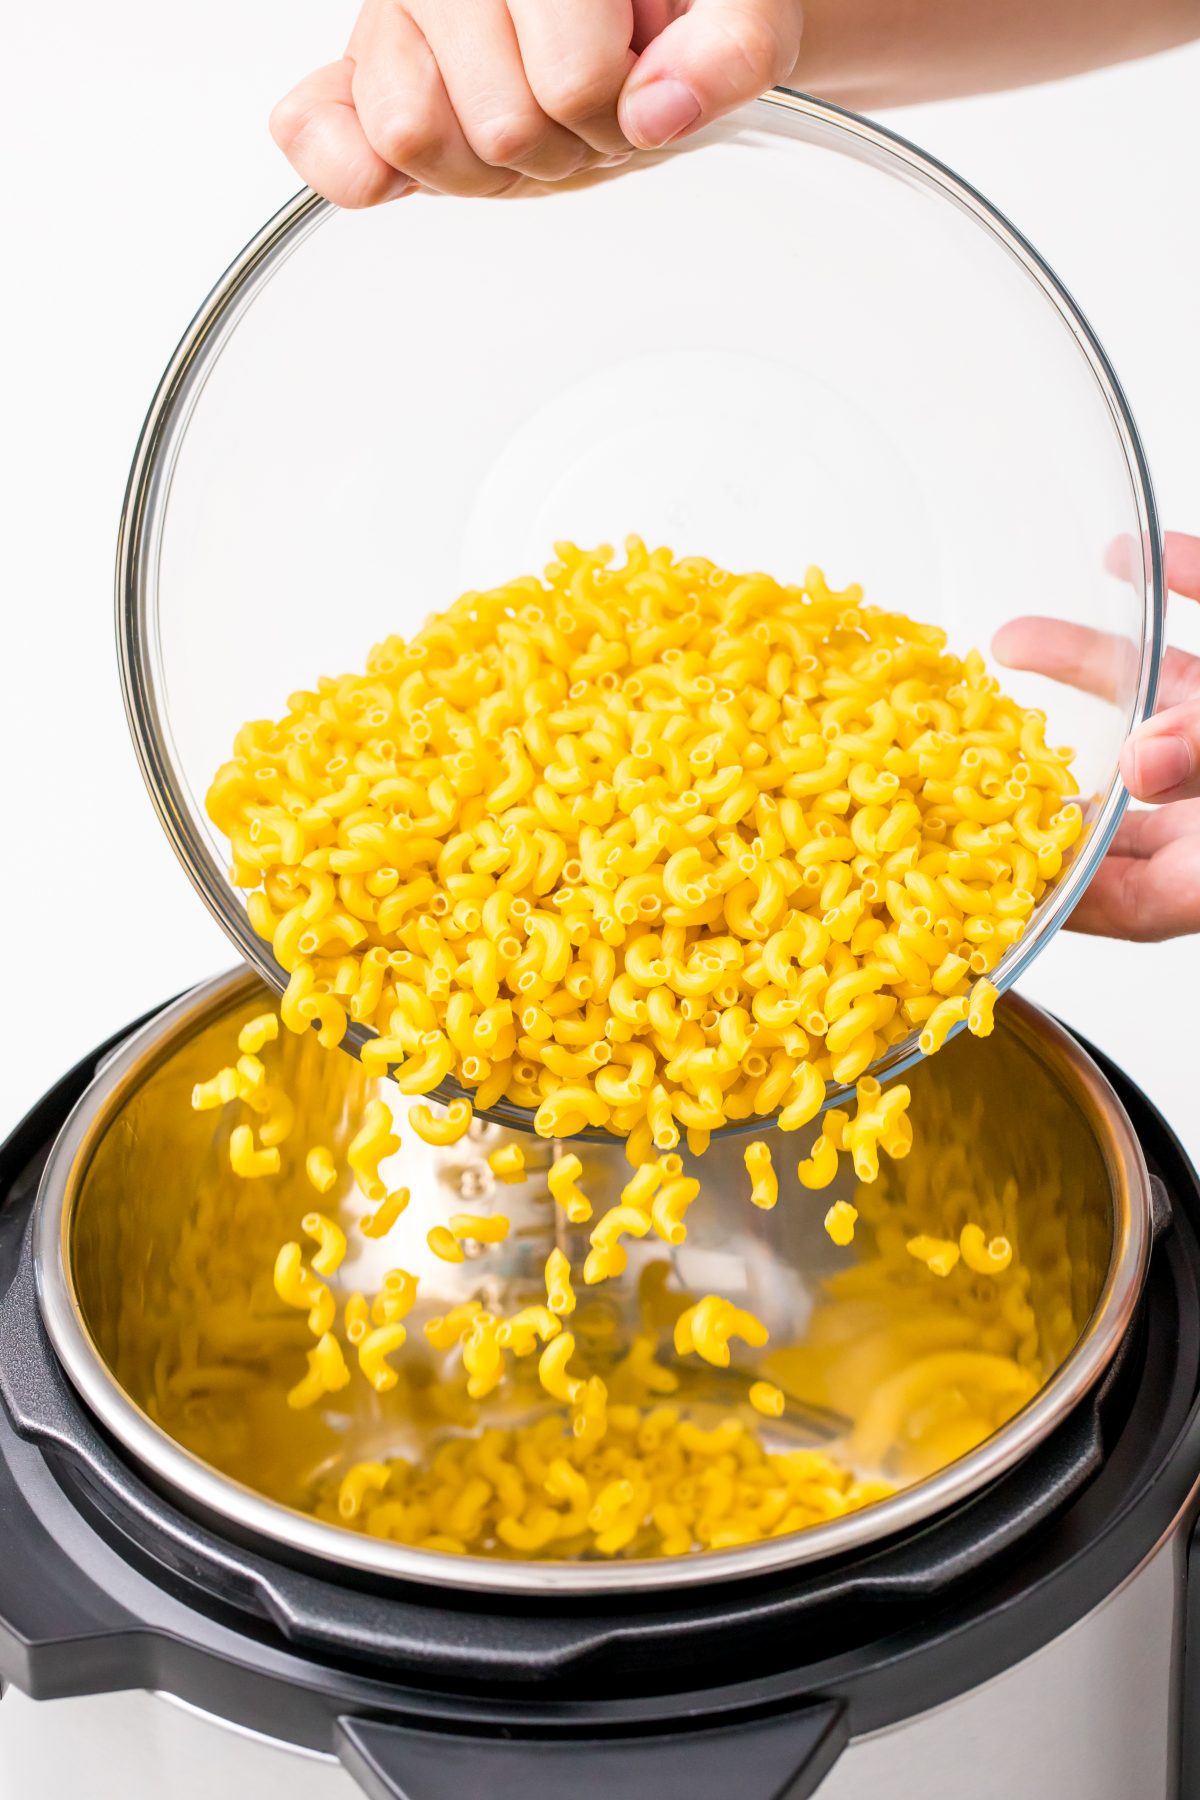 Pour raw macaroni into instant pot